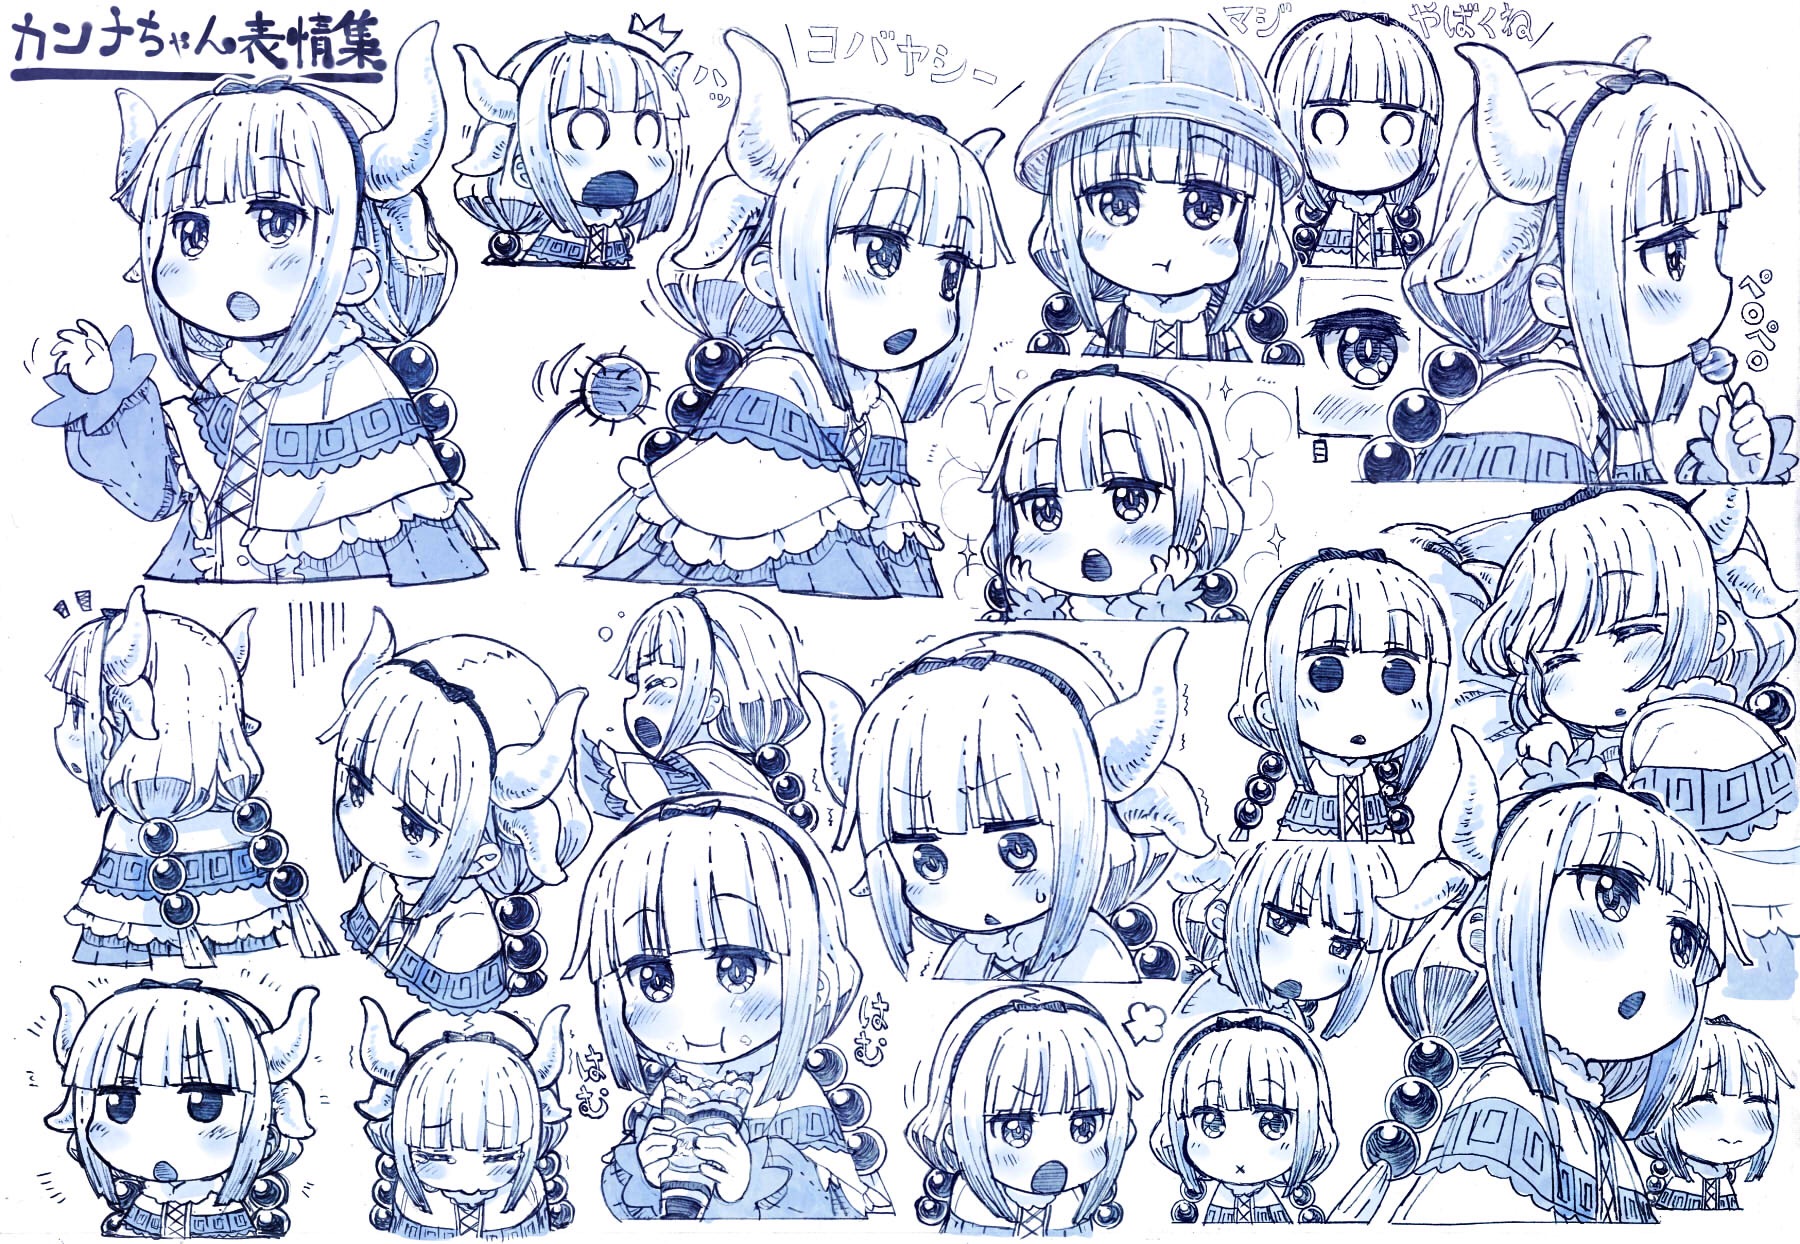 miss kobayashi's dragon maid, anime, kanna kamui, sketch Image for desktop